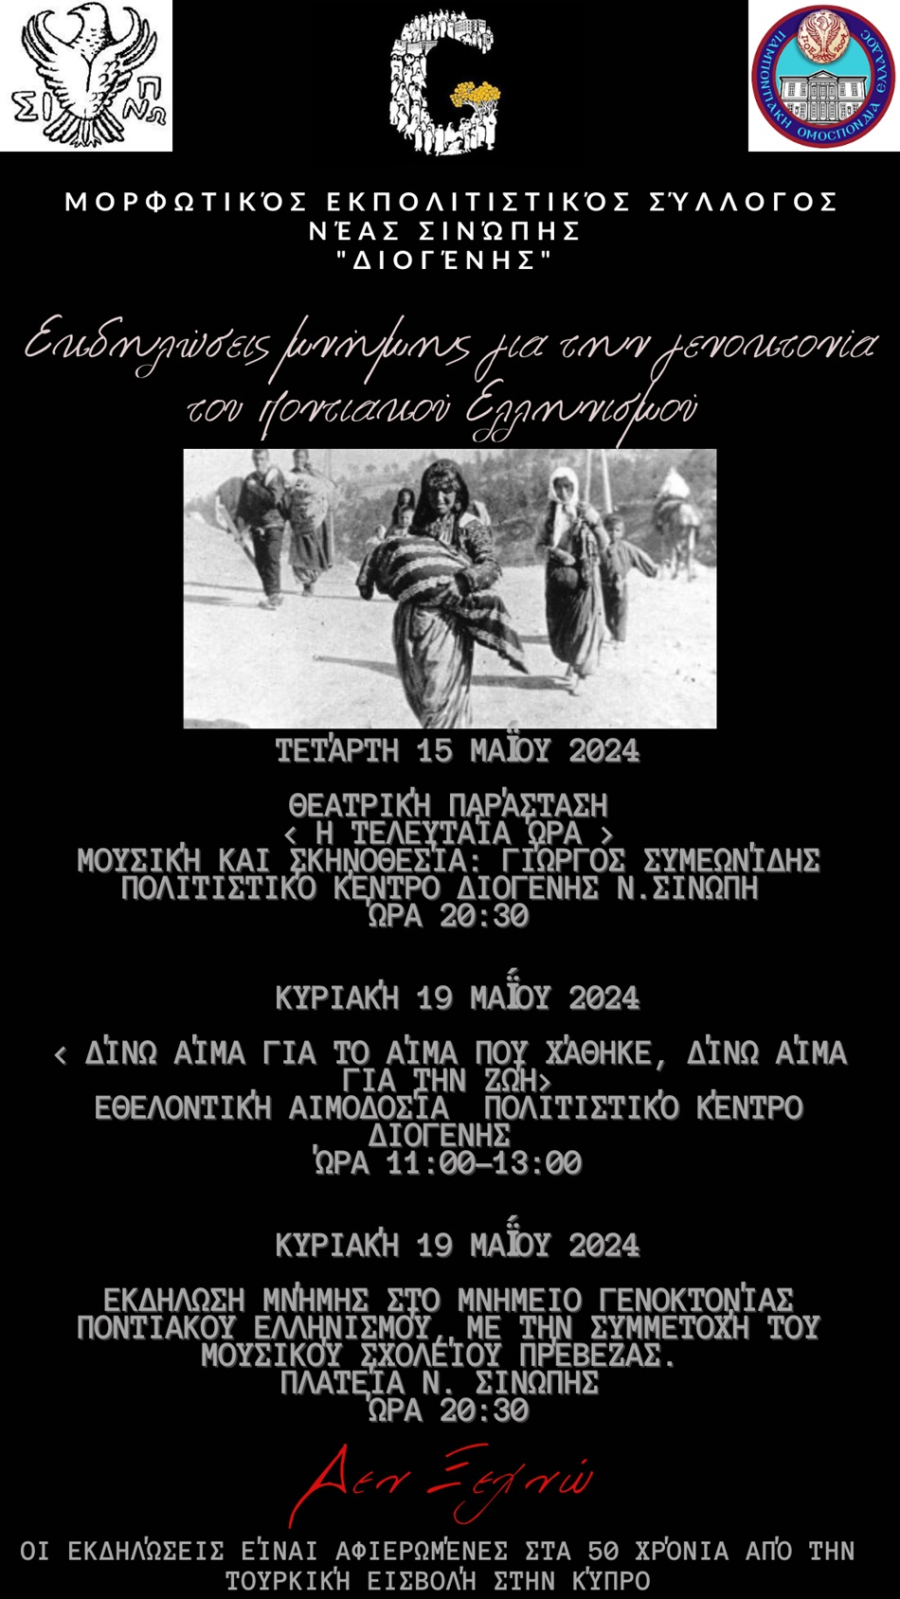 Εκδηλώσεις Μνήμης Γενοκτονίας του Ποντιακού Ελληνισμού από το Μορφωτικό Εκπολιτιστικό Σύλλογο Ν.Σινώπης "ΔΙΟΓΕΝΗΣ"